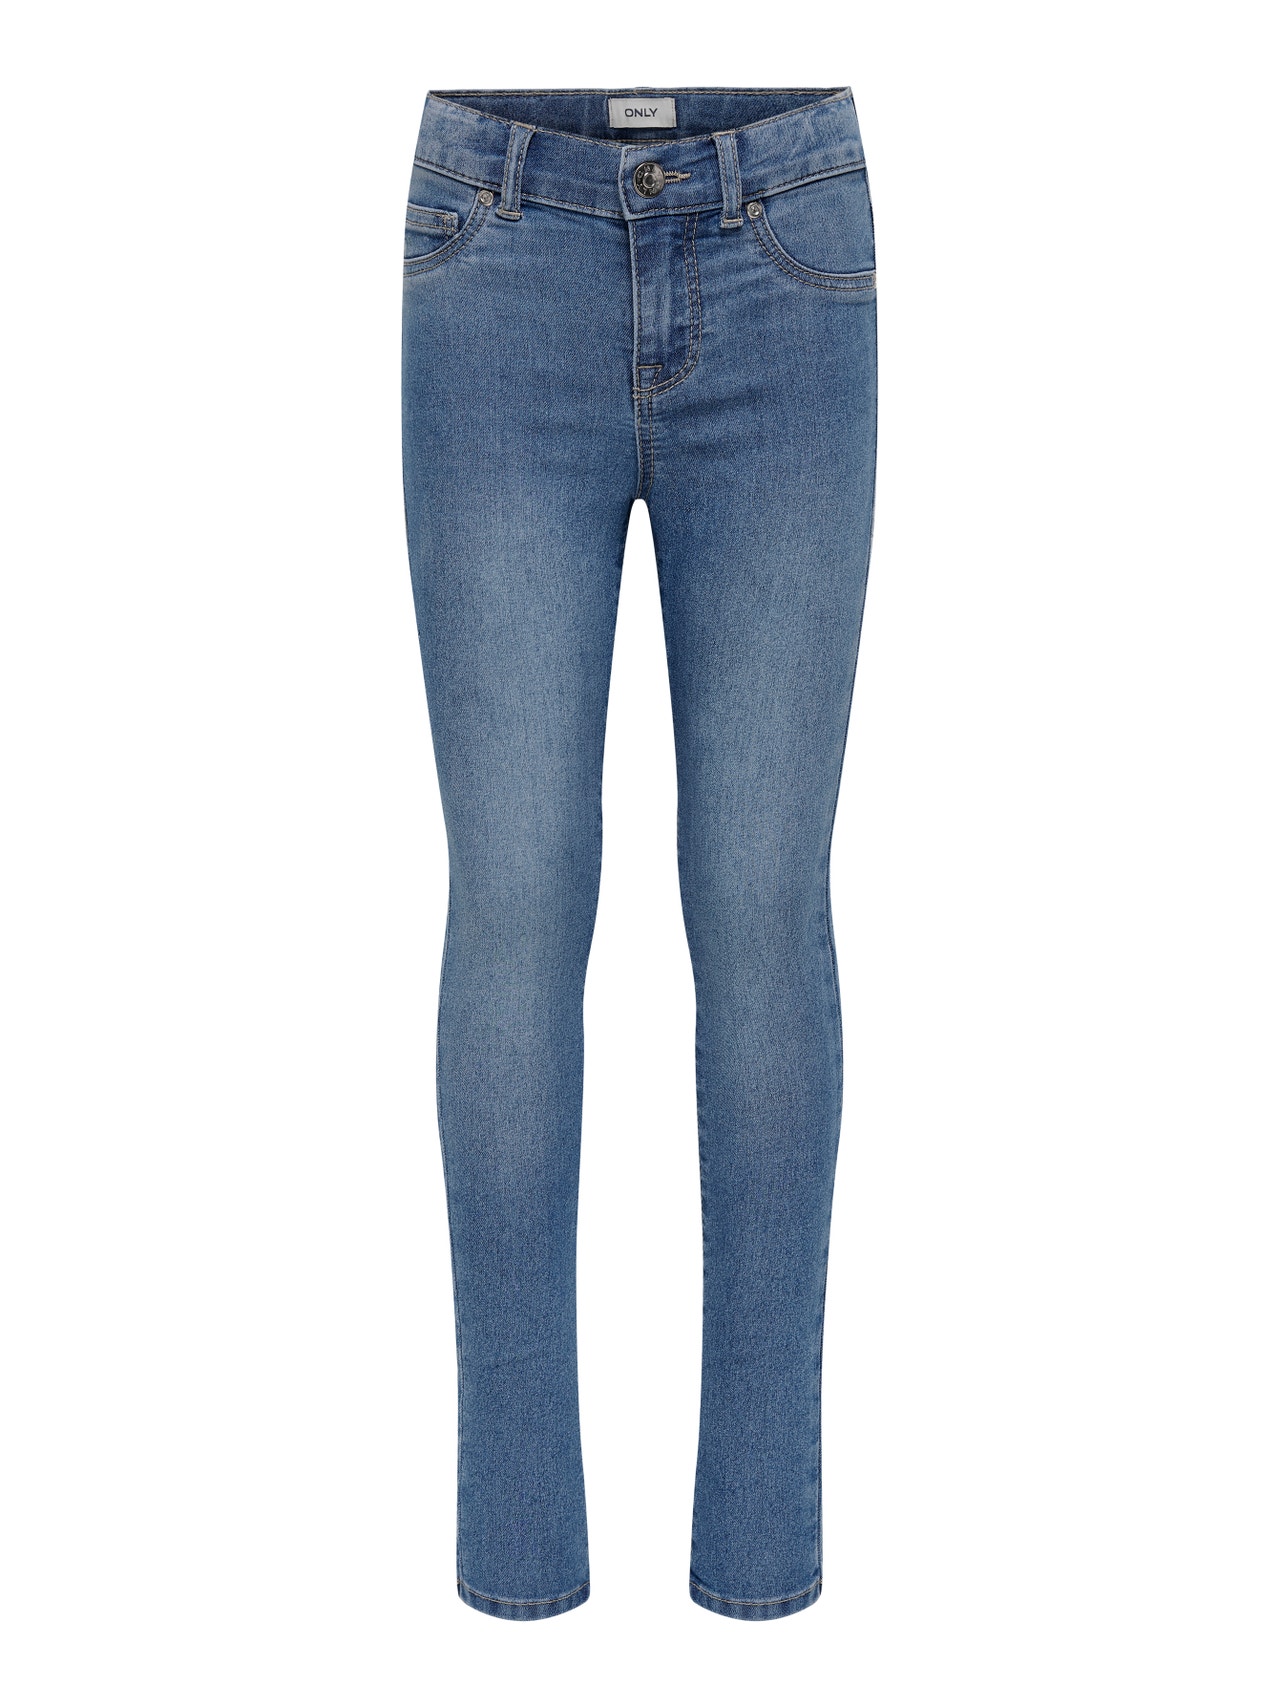 ONLY Jeans Skinny Fit -Light Blue Denim - 15274239